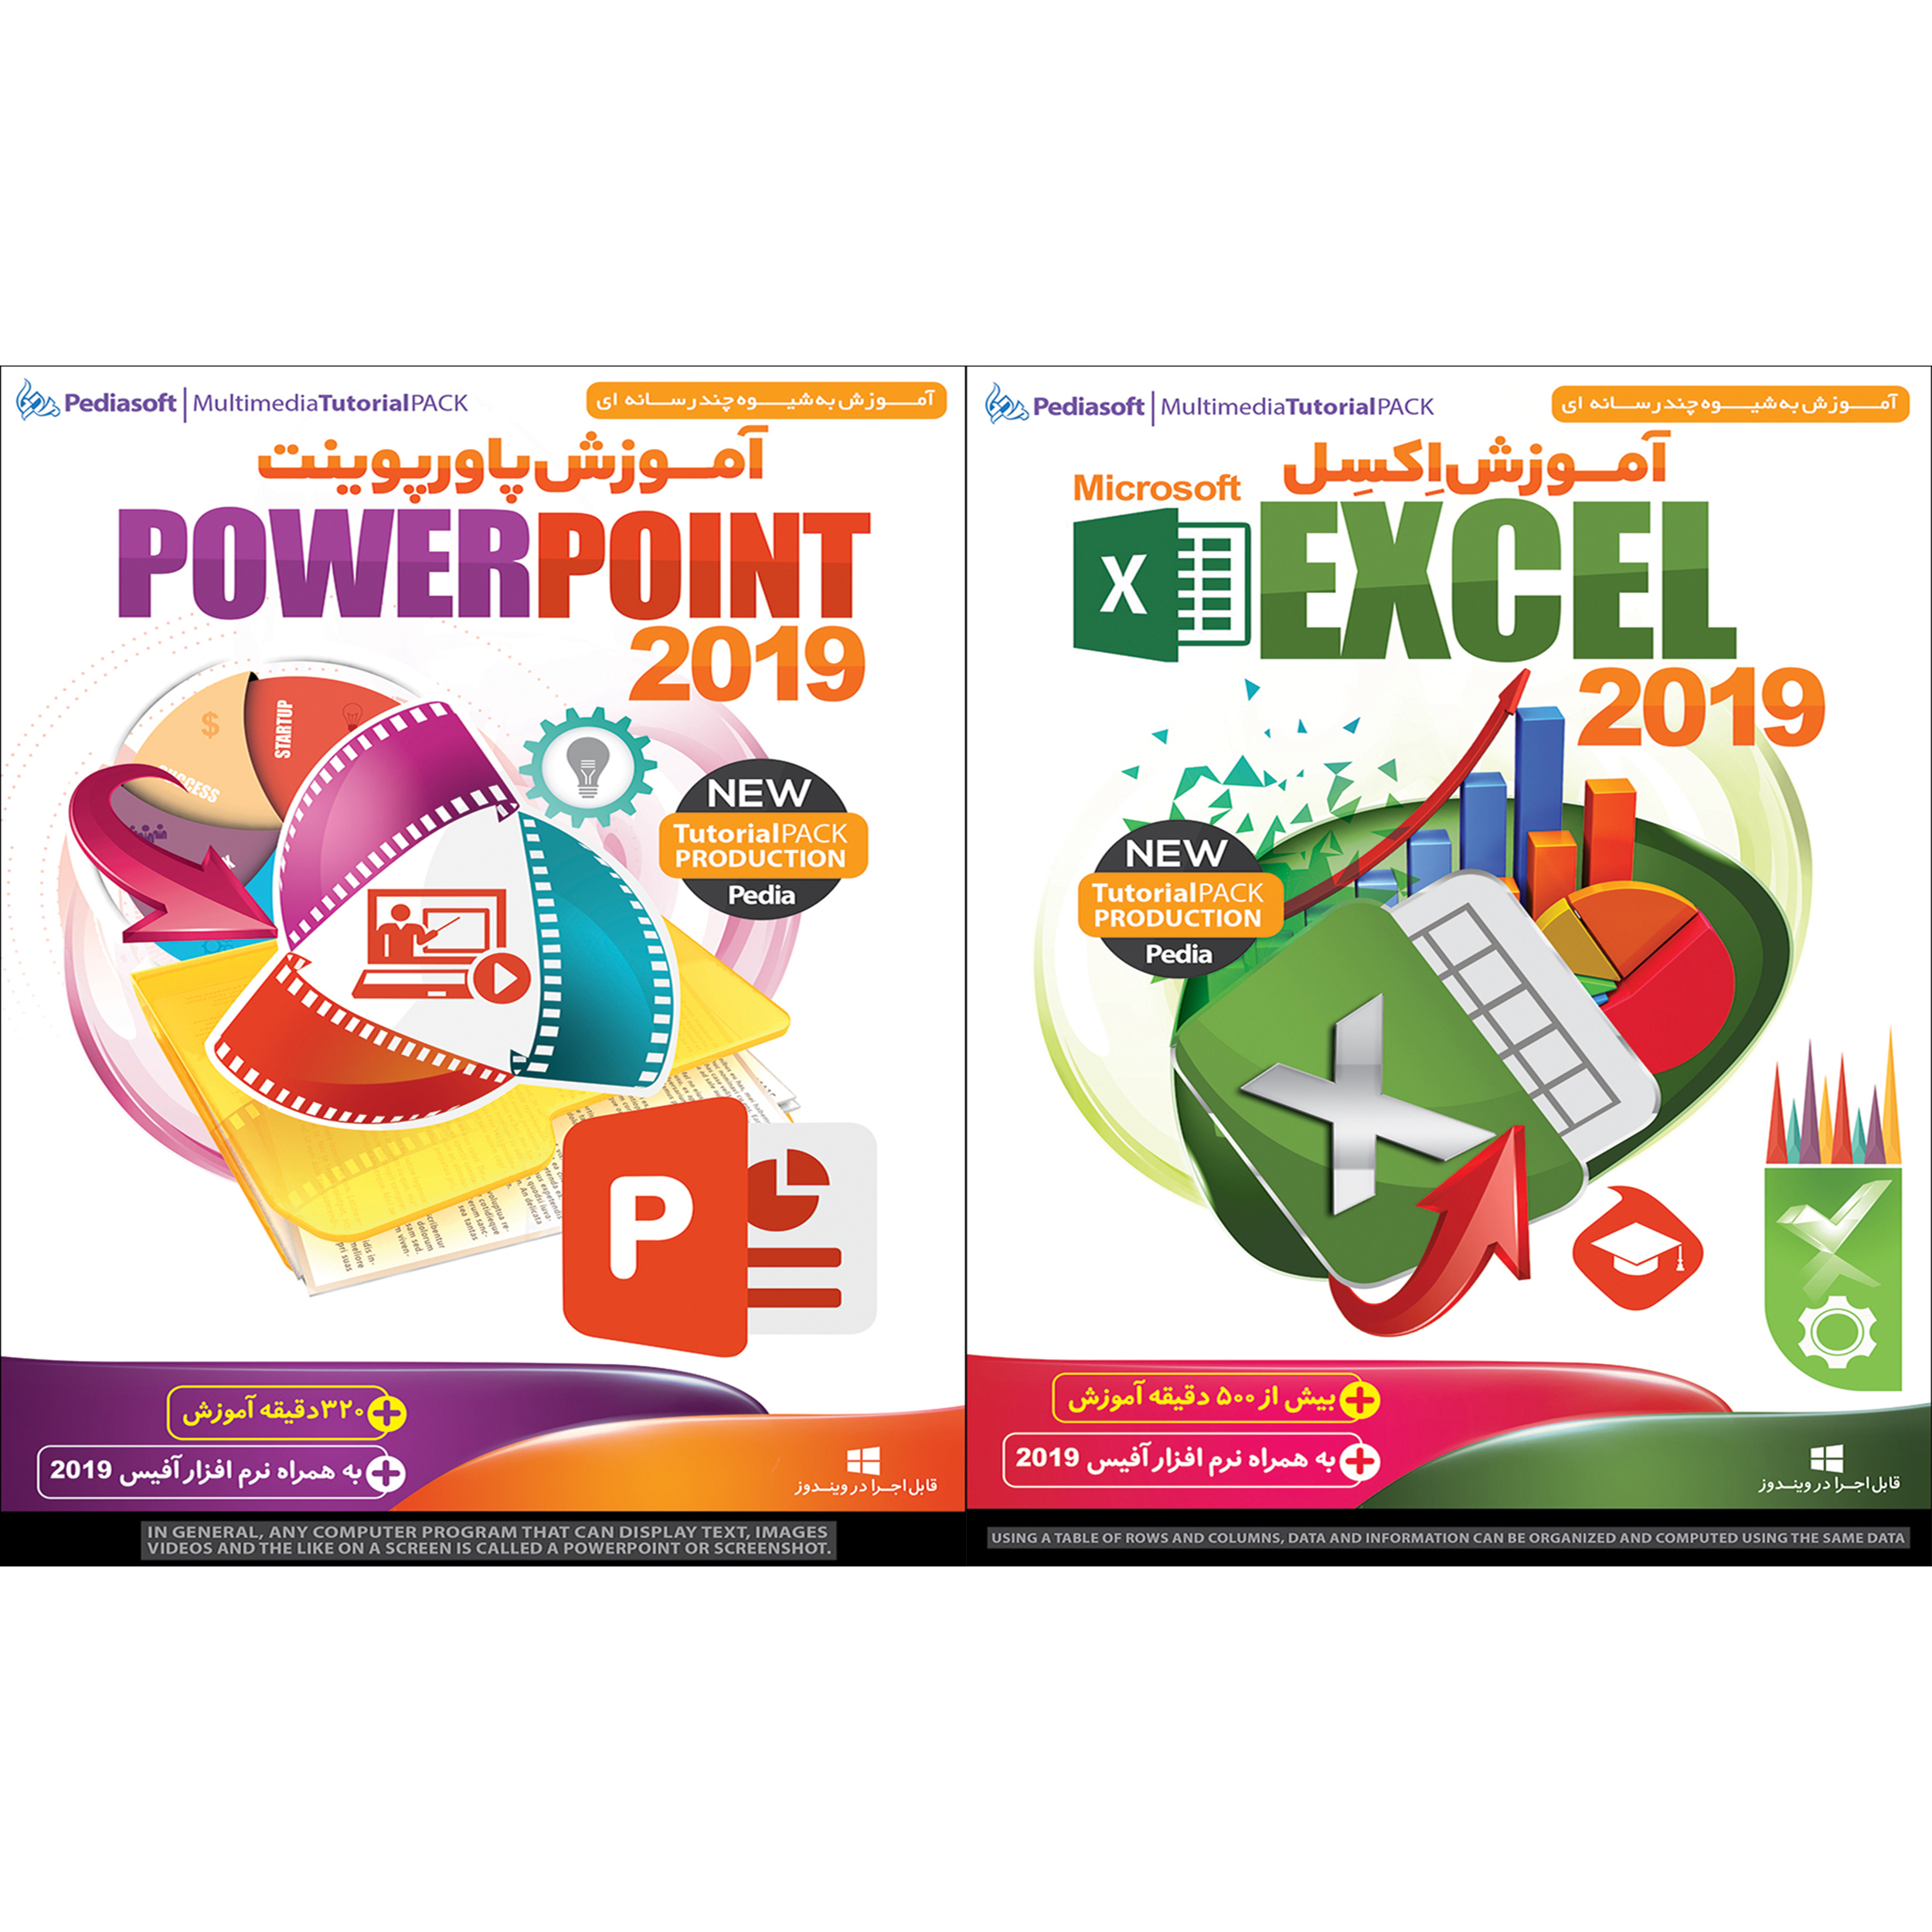 نرم افزار آموزش اکسل Excel 2019 نشر پدیا سافت به همراه نرم افزار آموزش پاورپوینت Powerpoint 2019 نشر پدیا سافت